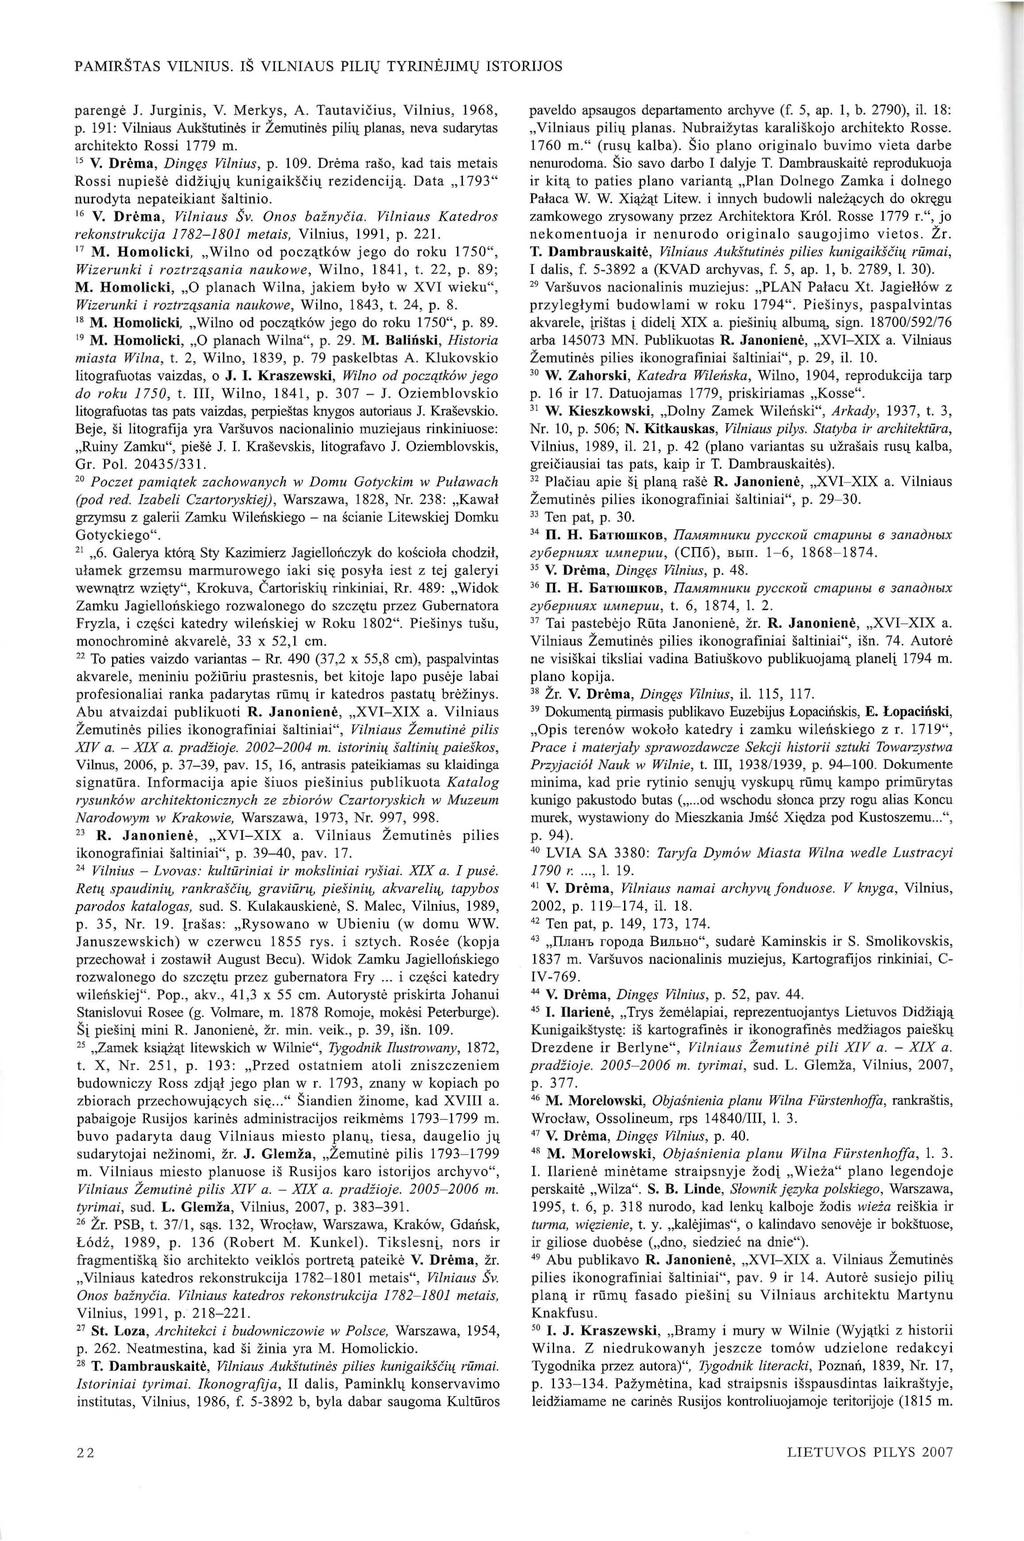 PAMIR~TAS VILNIUS. I~ VILNIAUS PILHJ TYRINEJIMl,J ISTORIJOS parenge J. Jurginis, V. Merkys, A. Tautavicius, Vi lnius, 1968, p. 191 : Vilniaus Aukstutines ir Zemutines pi!